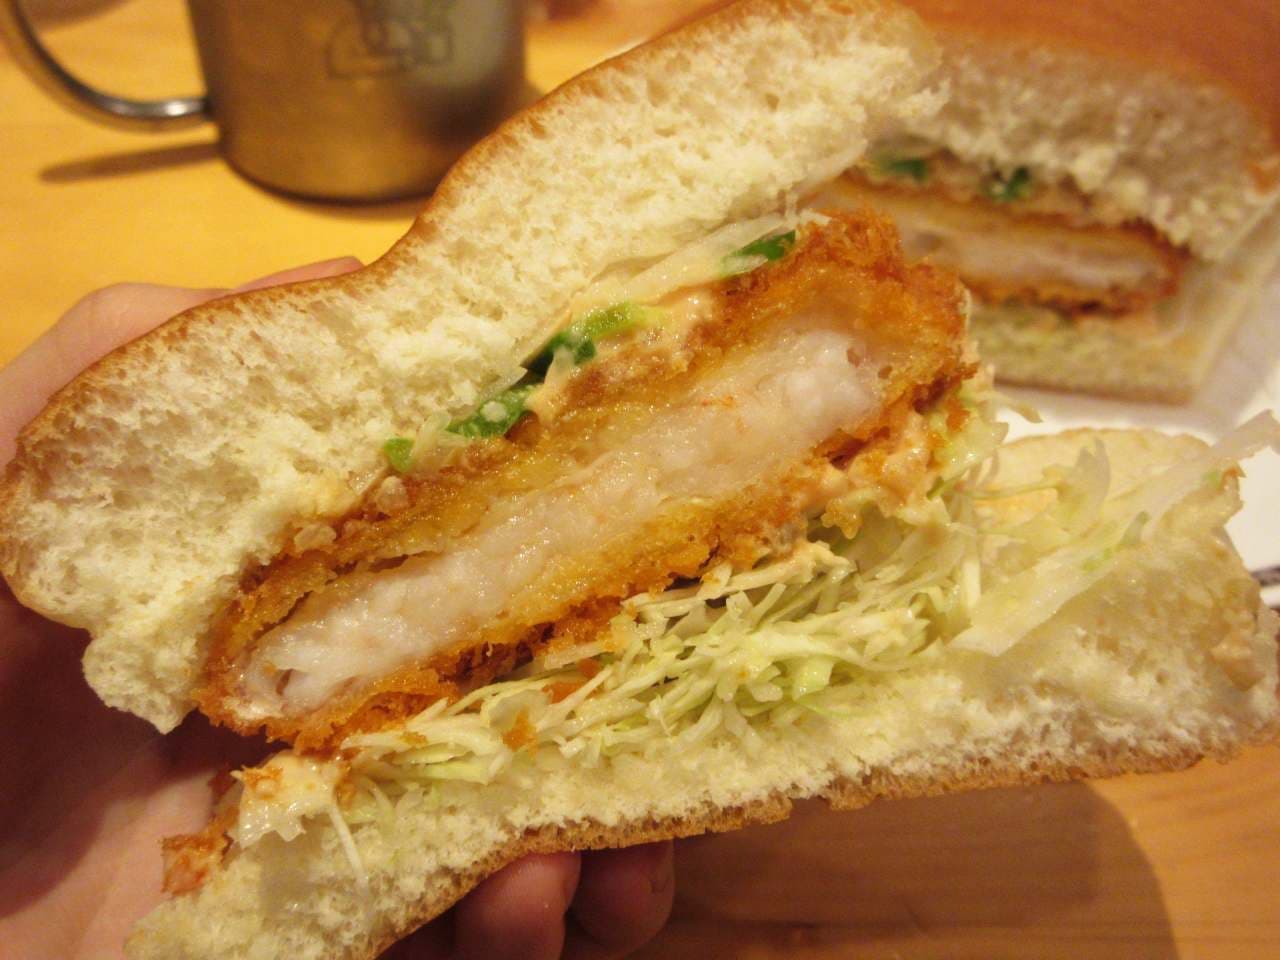 Komeda "Shrimp cutlet bread"